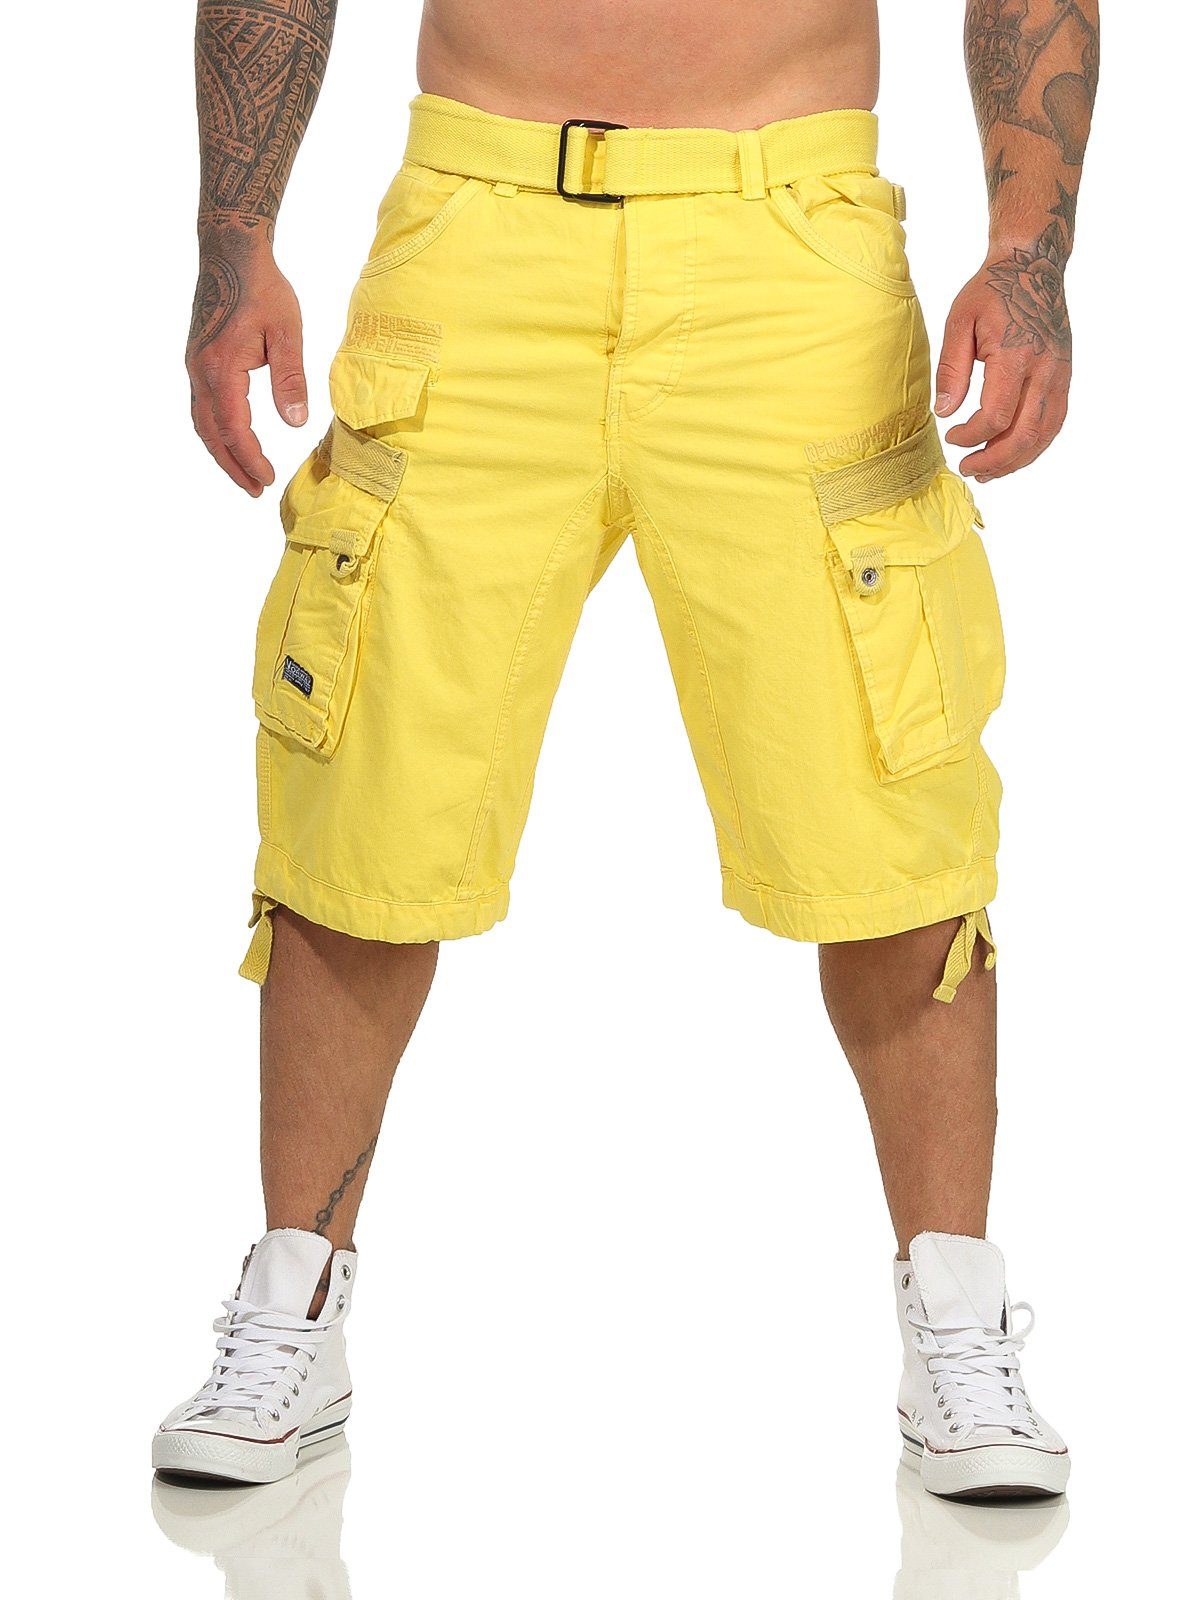 Geographical Norway Cargoshorts Herren Shorts PANORAMIQUE (mit abnehmbarem Gürtel) Shorts, kurze Hose, unifarben / camouflage yellow